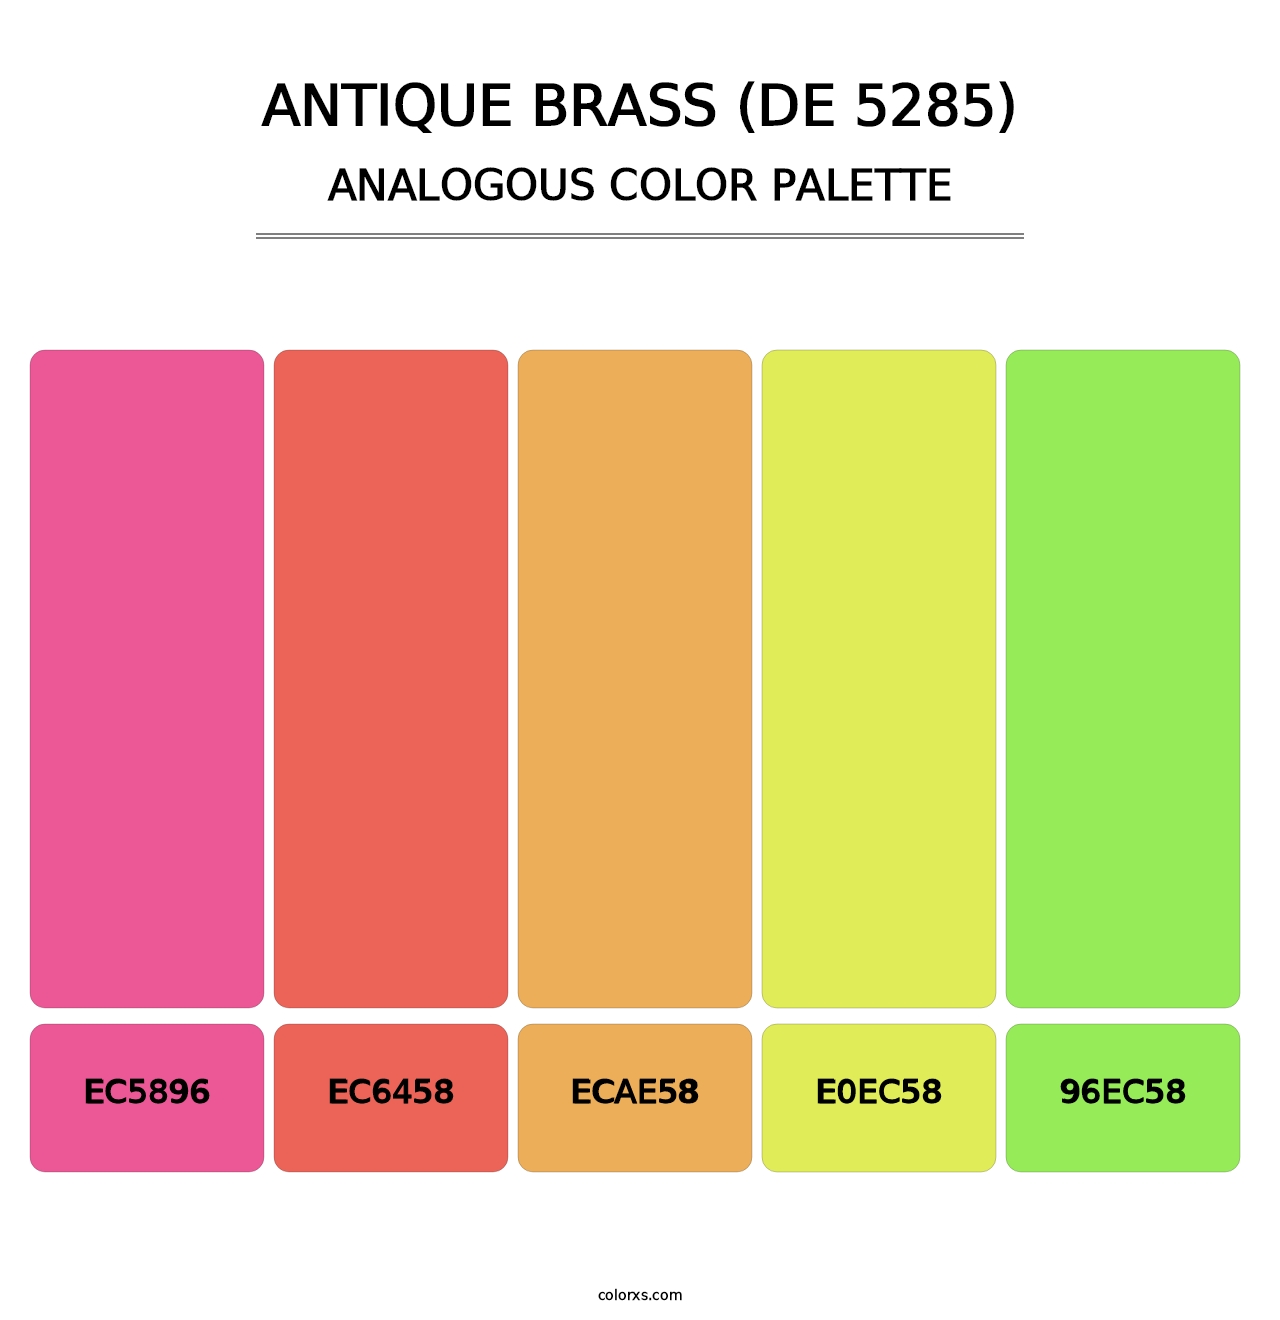 Antique Brass (DE 5285) - Analogous Color Palette